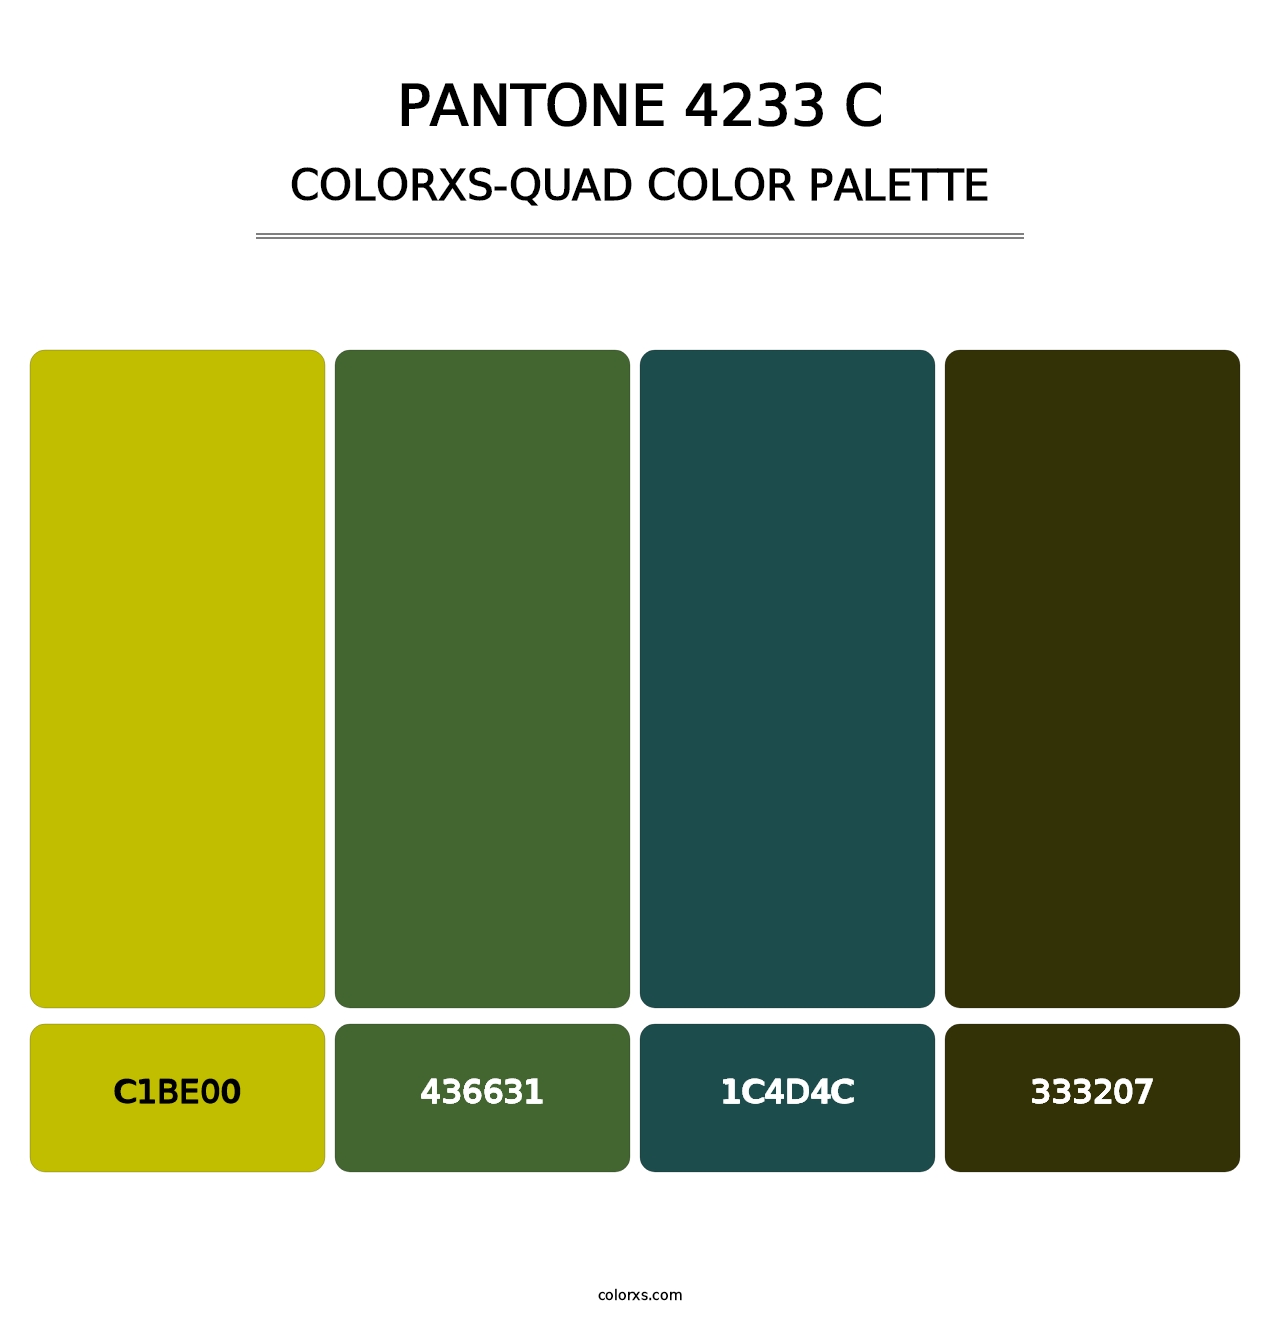 PANTONE 4233 C - Colorxs Quad Palette